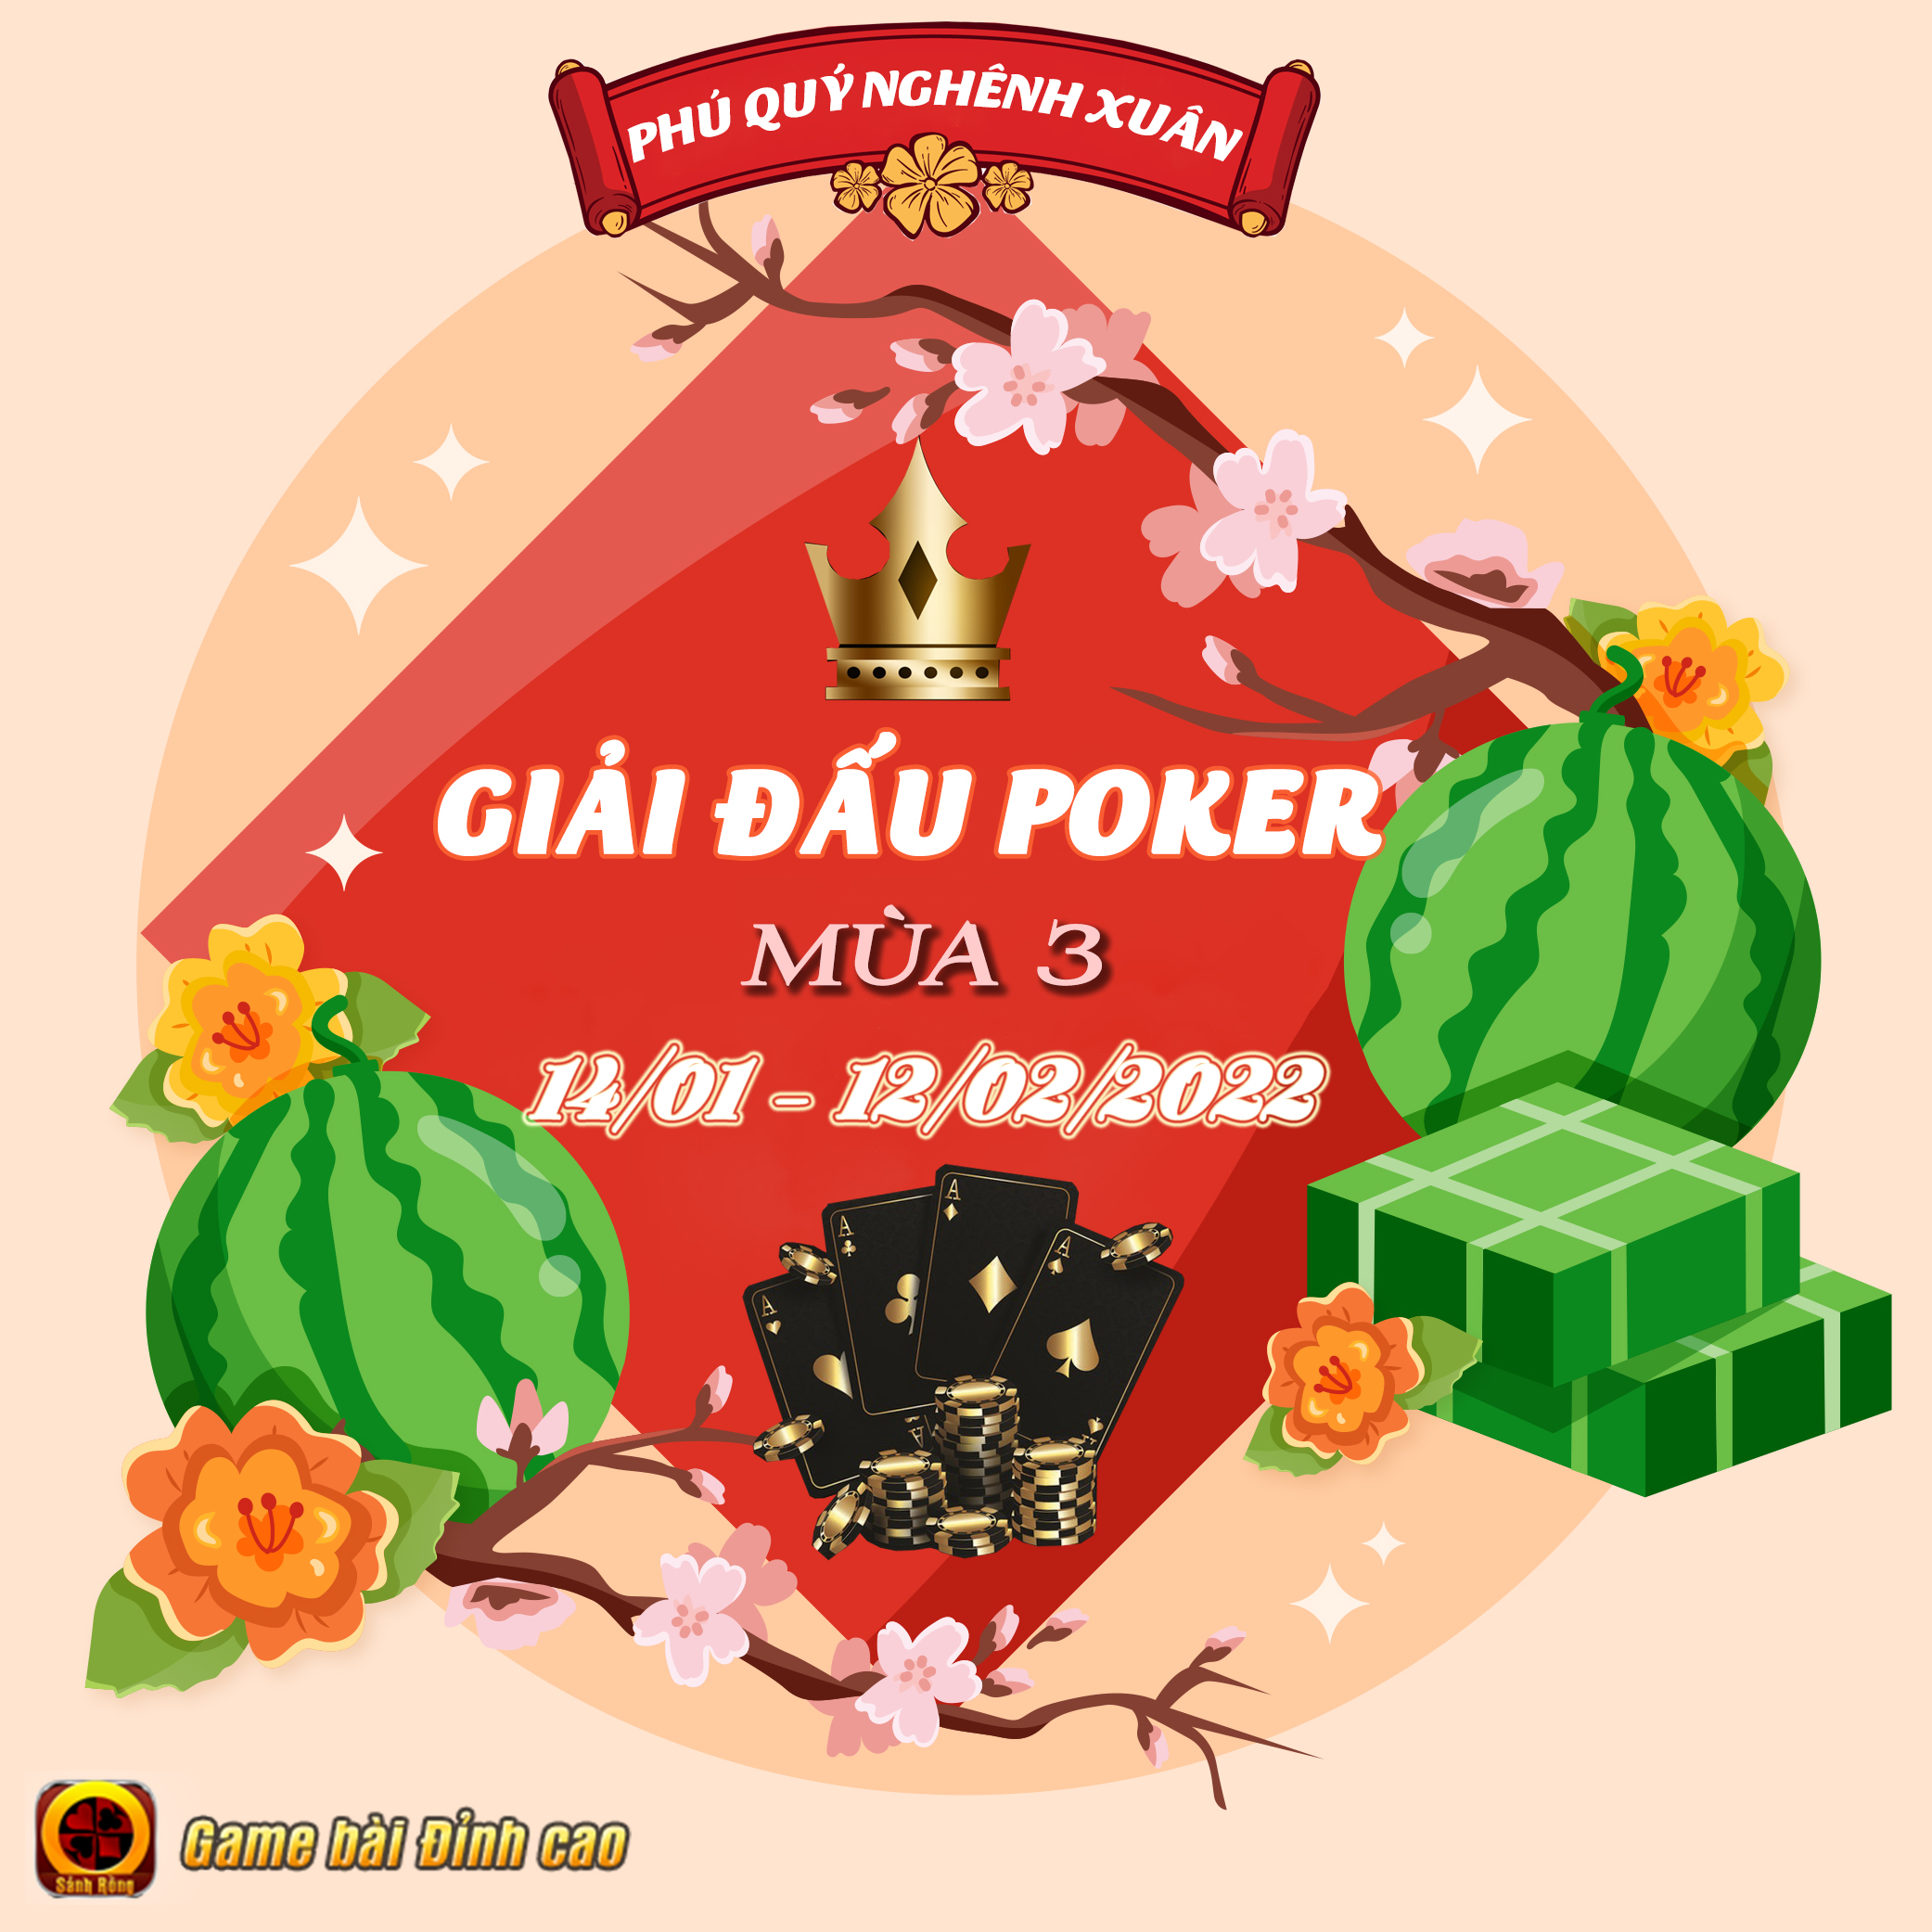 [ THÔNG BÁO ] Sảnh Rồng Chính Thức Khởi Động Giải Đấu Poker Mùa 3 Mừng Xuân 2022 